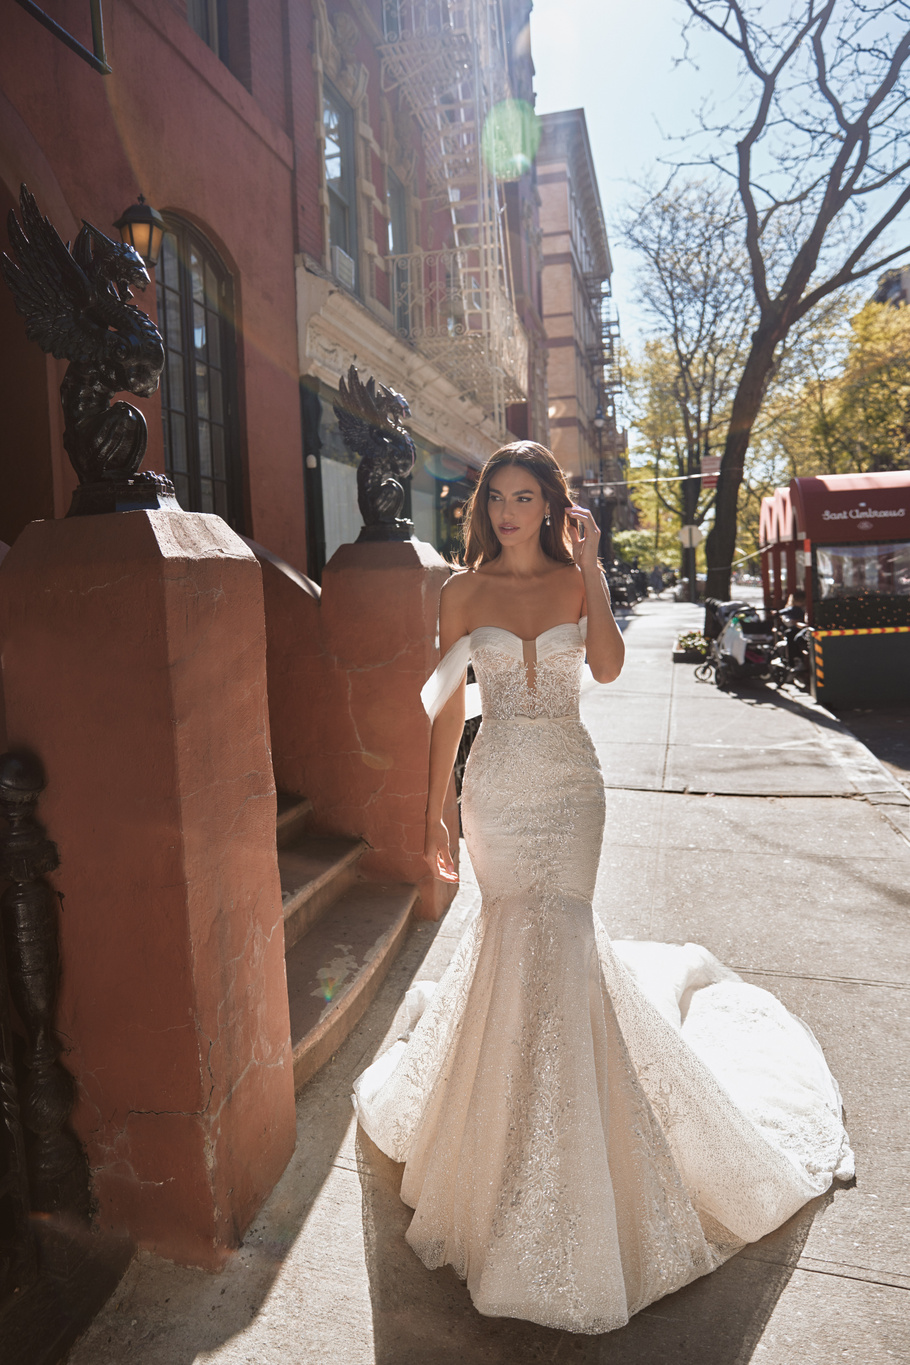 Купить свадебное платье «Рома» Вона из коллекции Любовь в городе 2022 года в салоне «Мэри Трюфель»